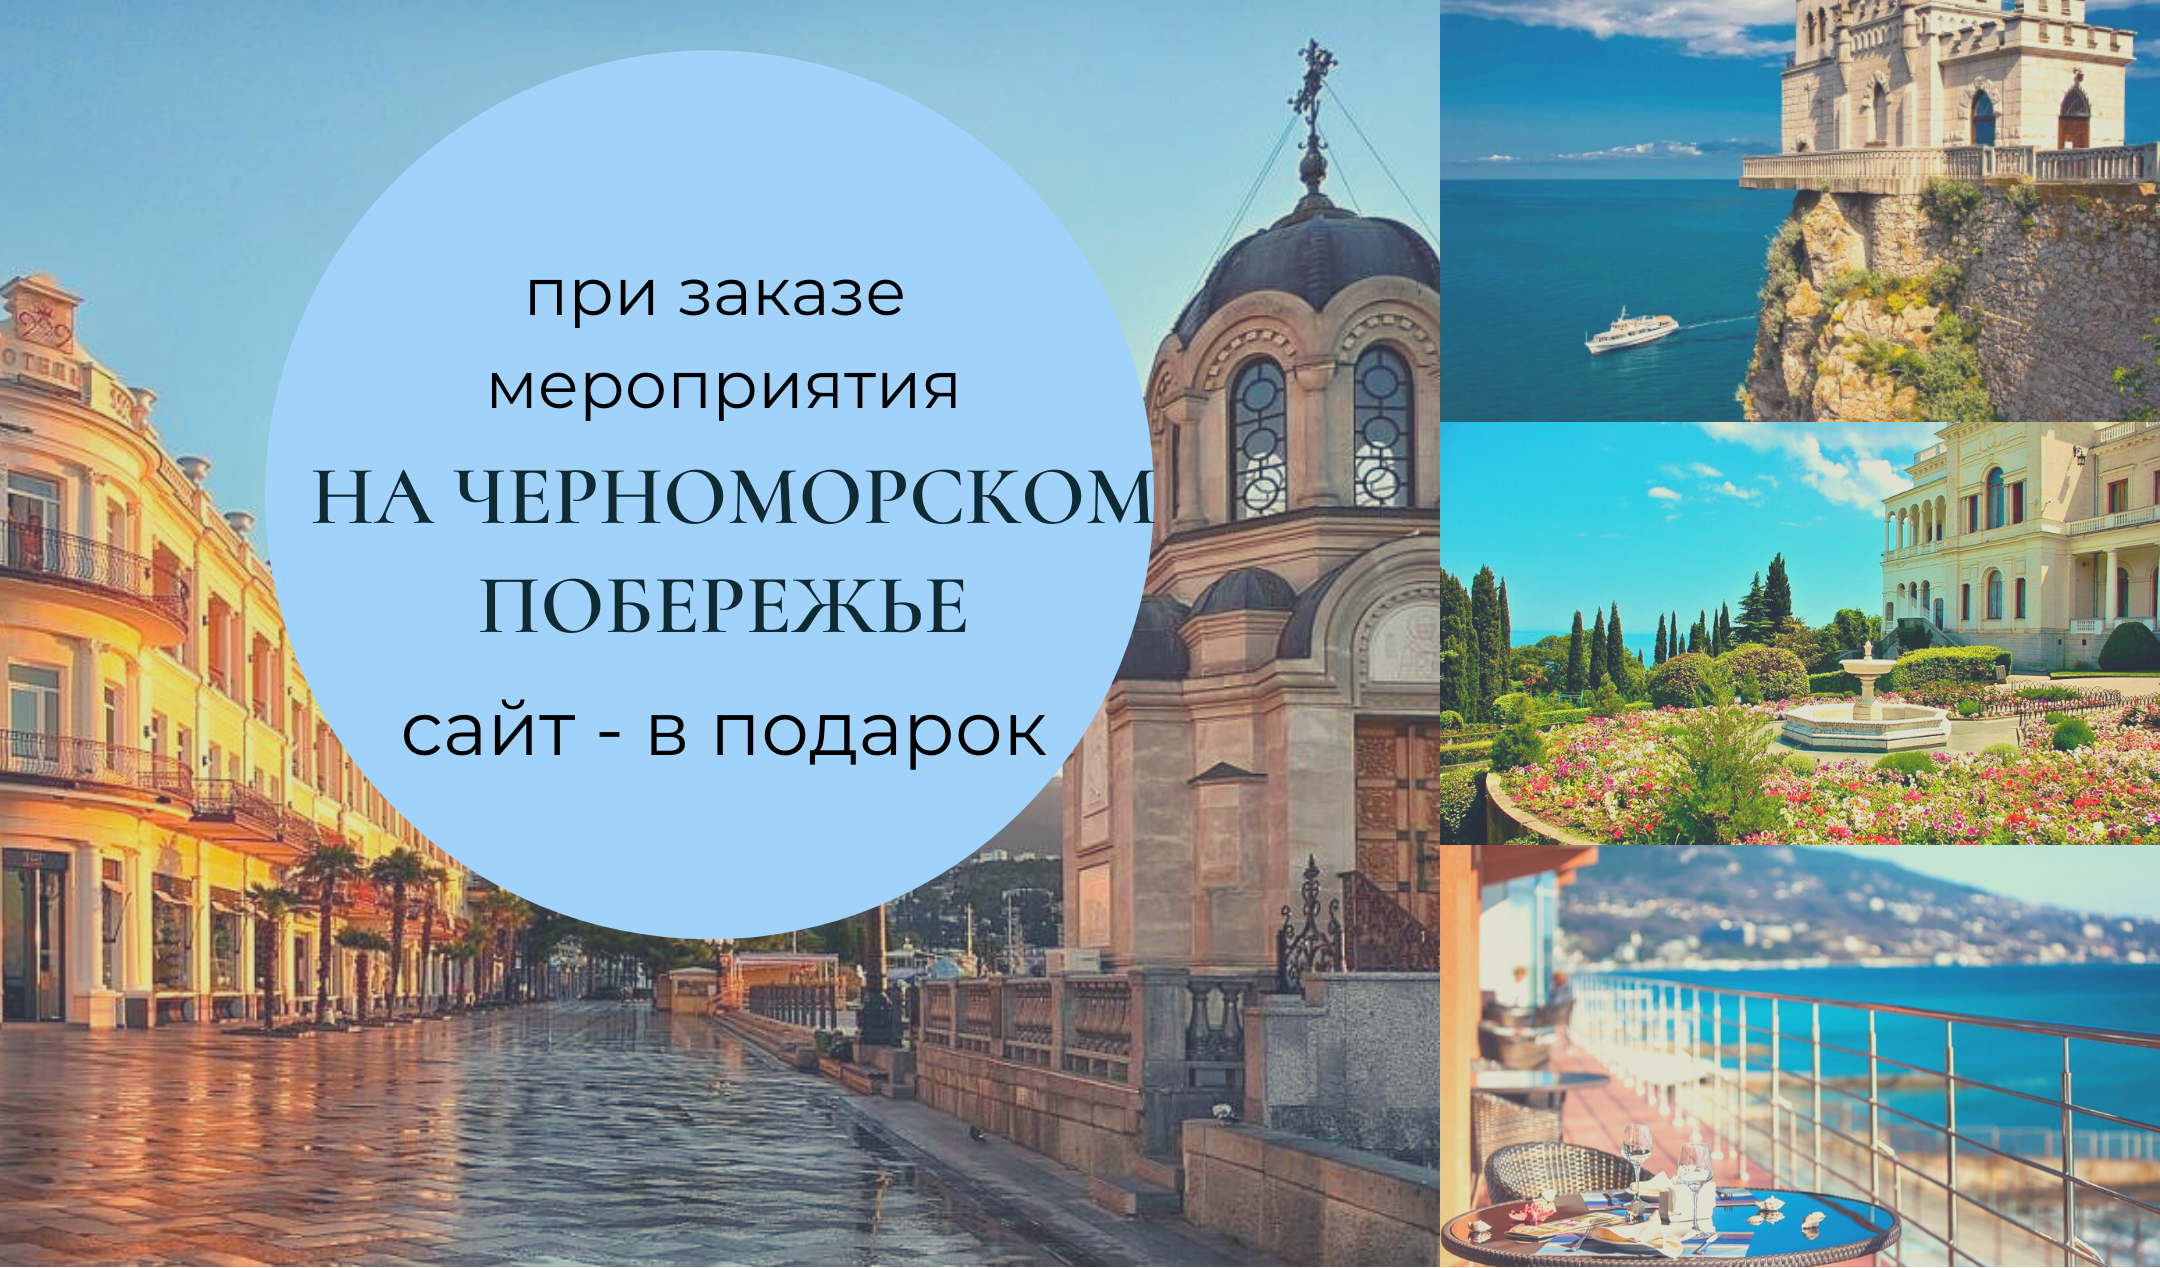 Сайт в подарок при заказе мероприятия на черноморском побережье